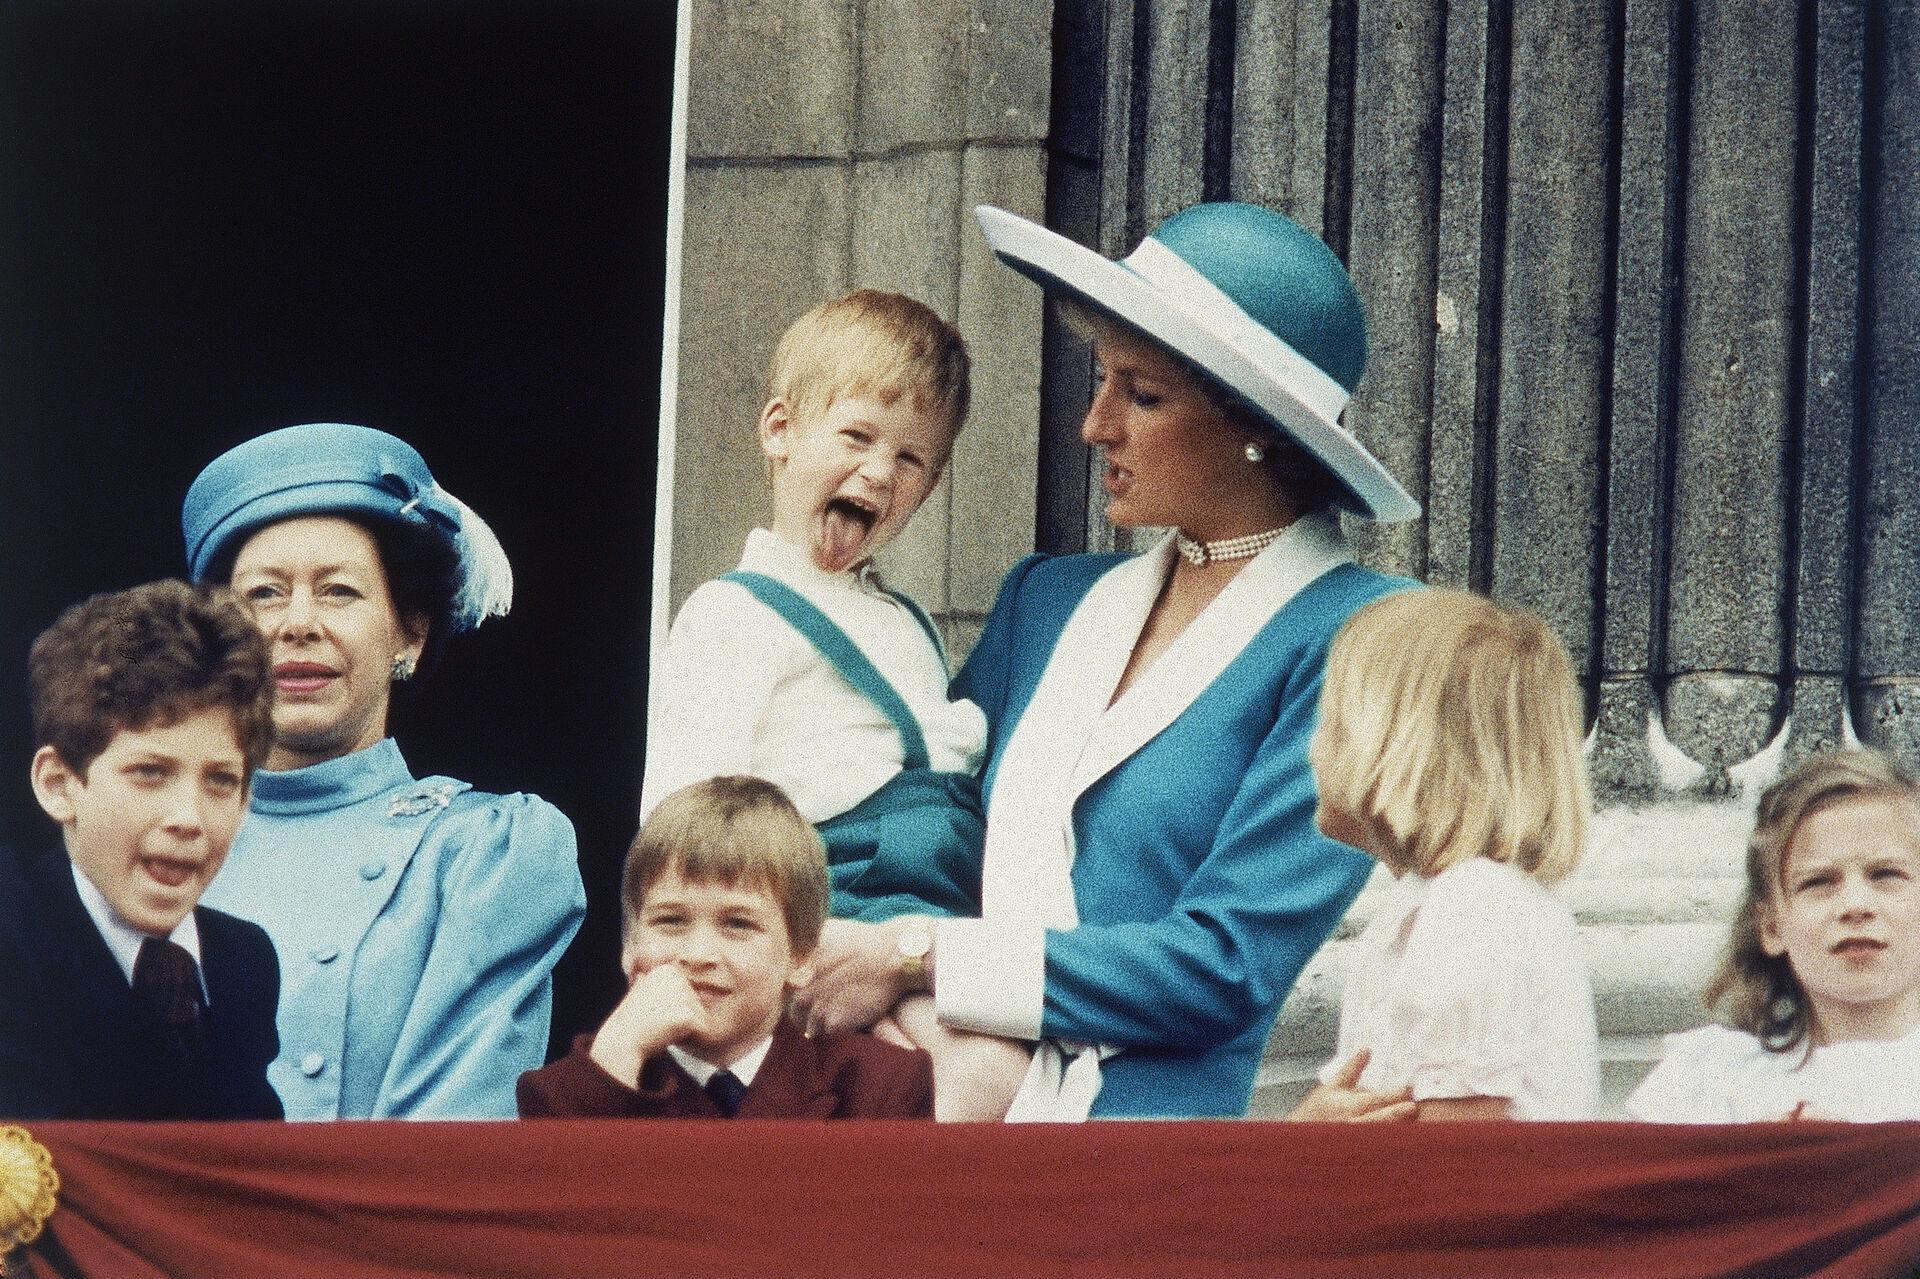 Var Kate Middletons tøjvalg en form for hyldest til prinsesse Diana? Det har flere briter sat spørgsmålstegn ved.